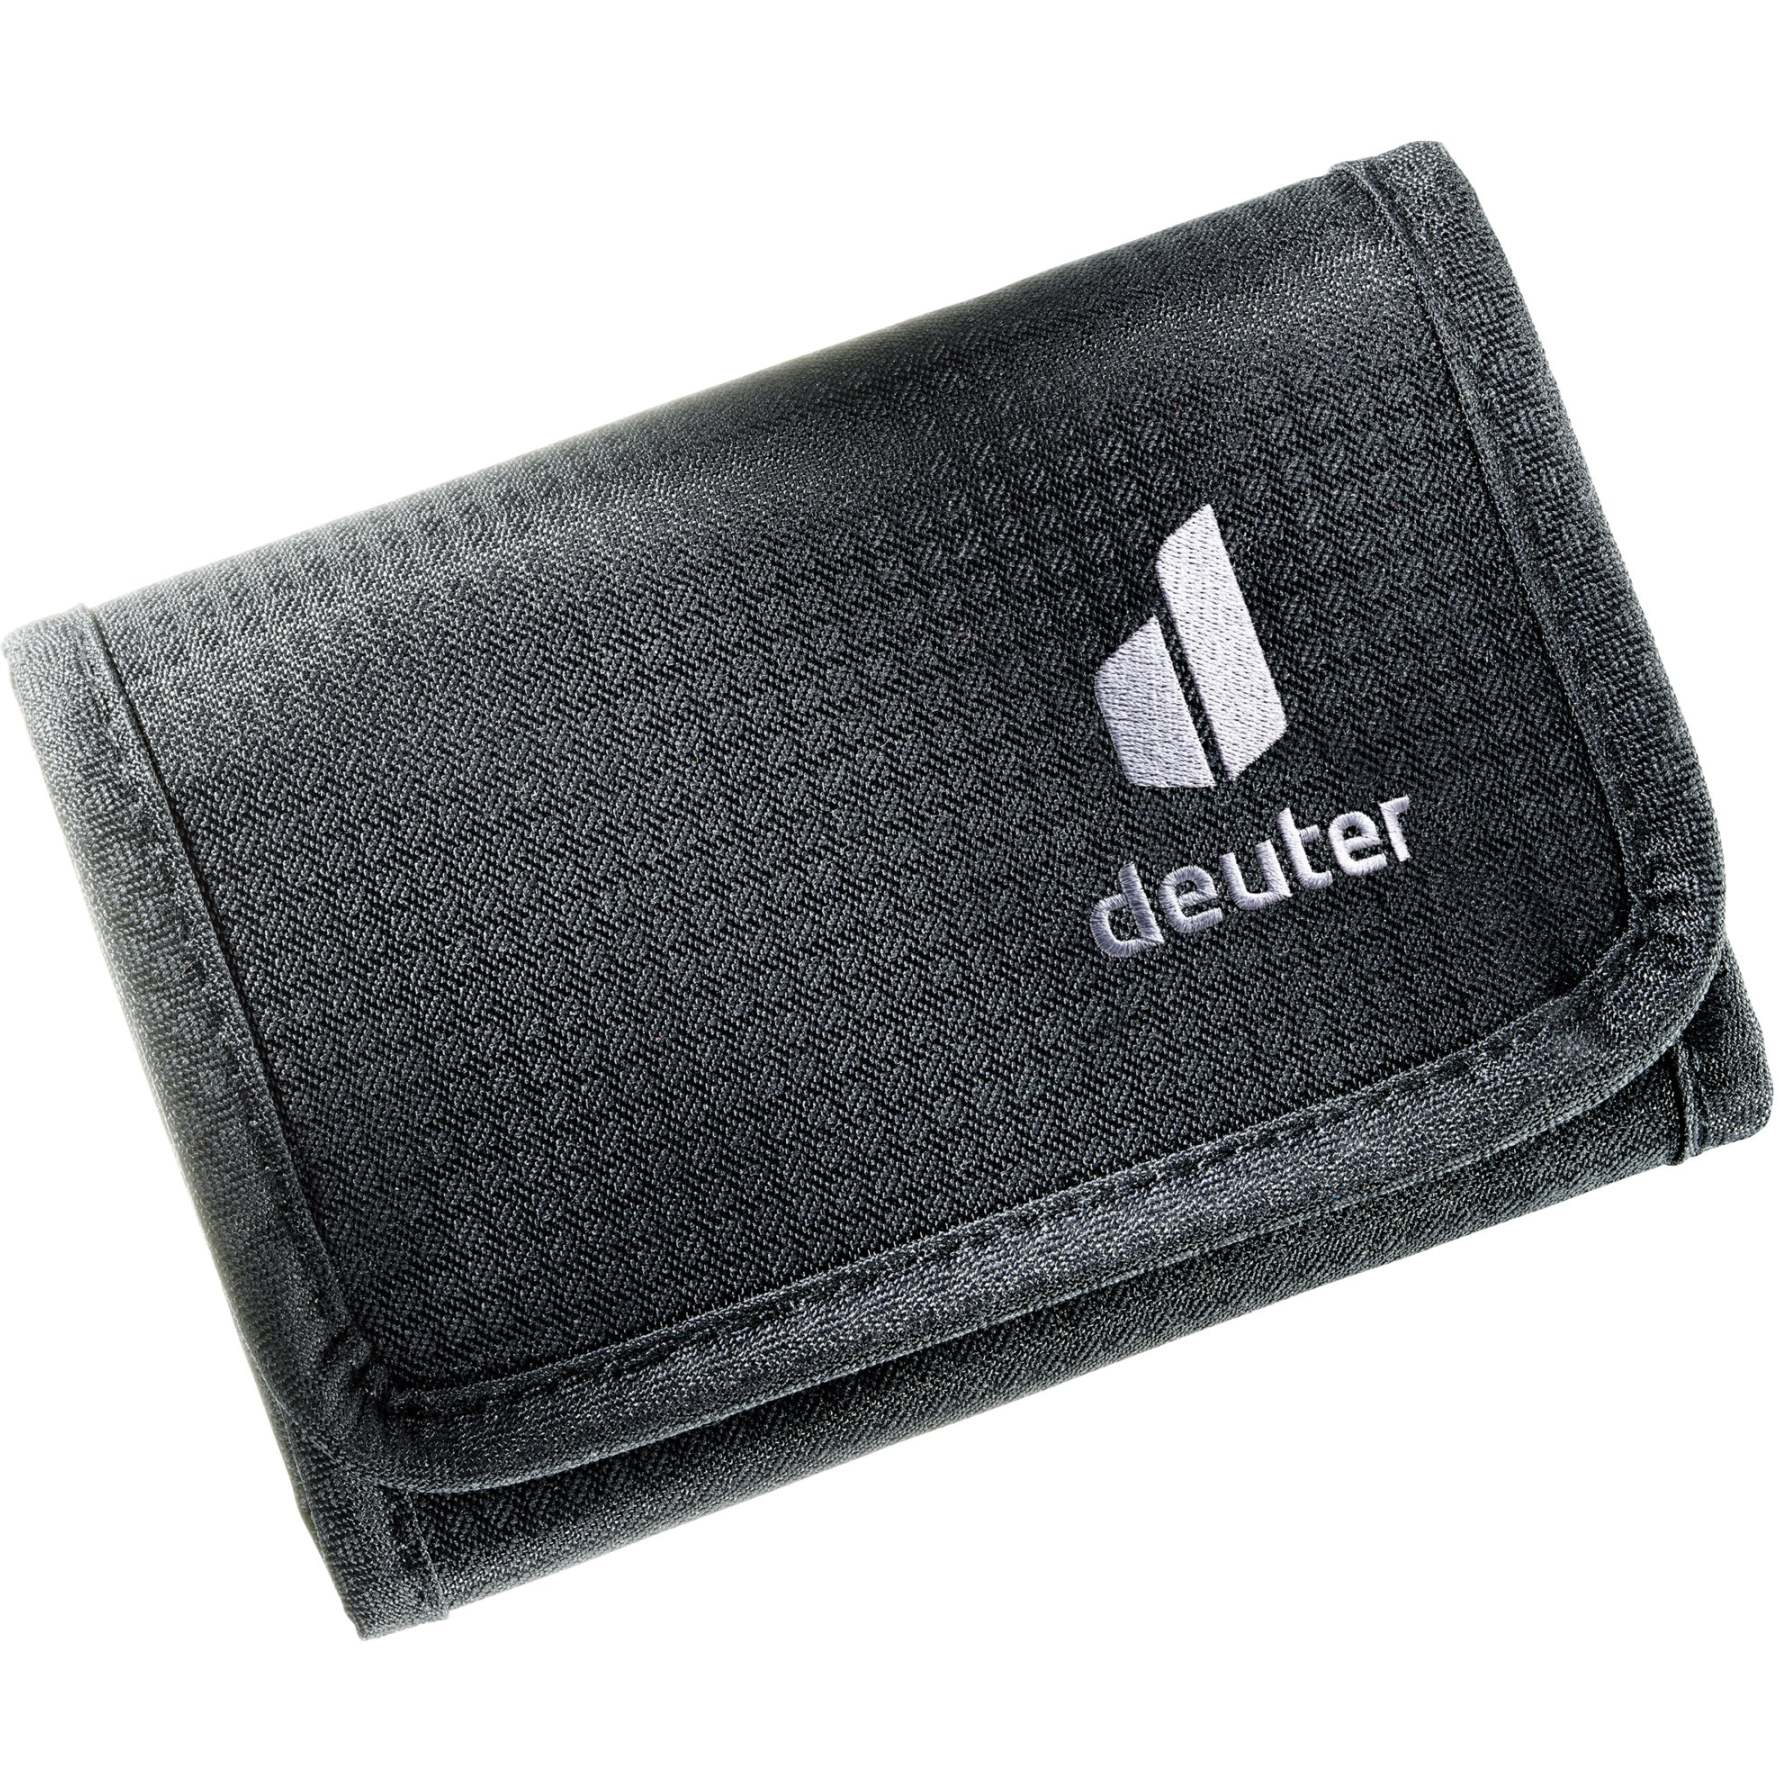 Produktbild von Deuter Travel Wallet Geldbörse - schwarz